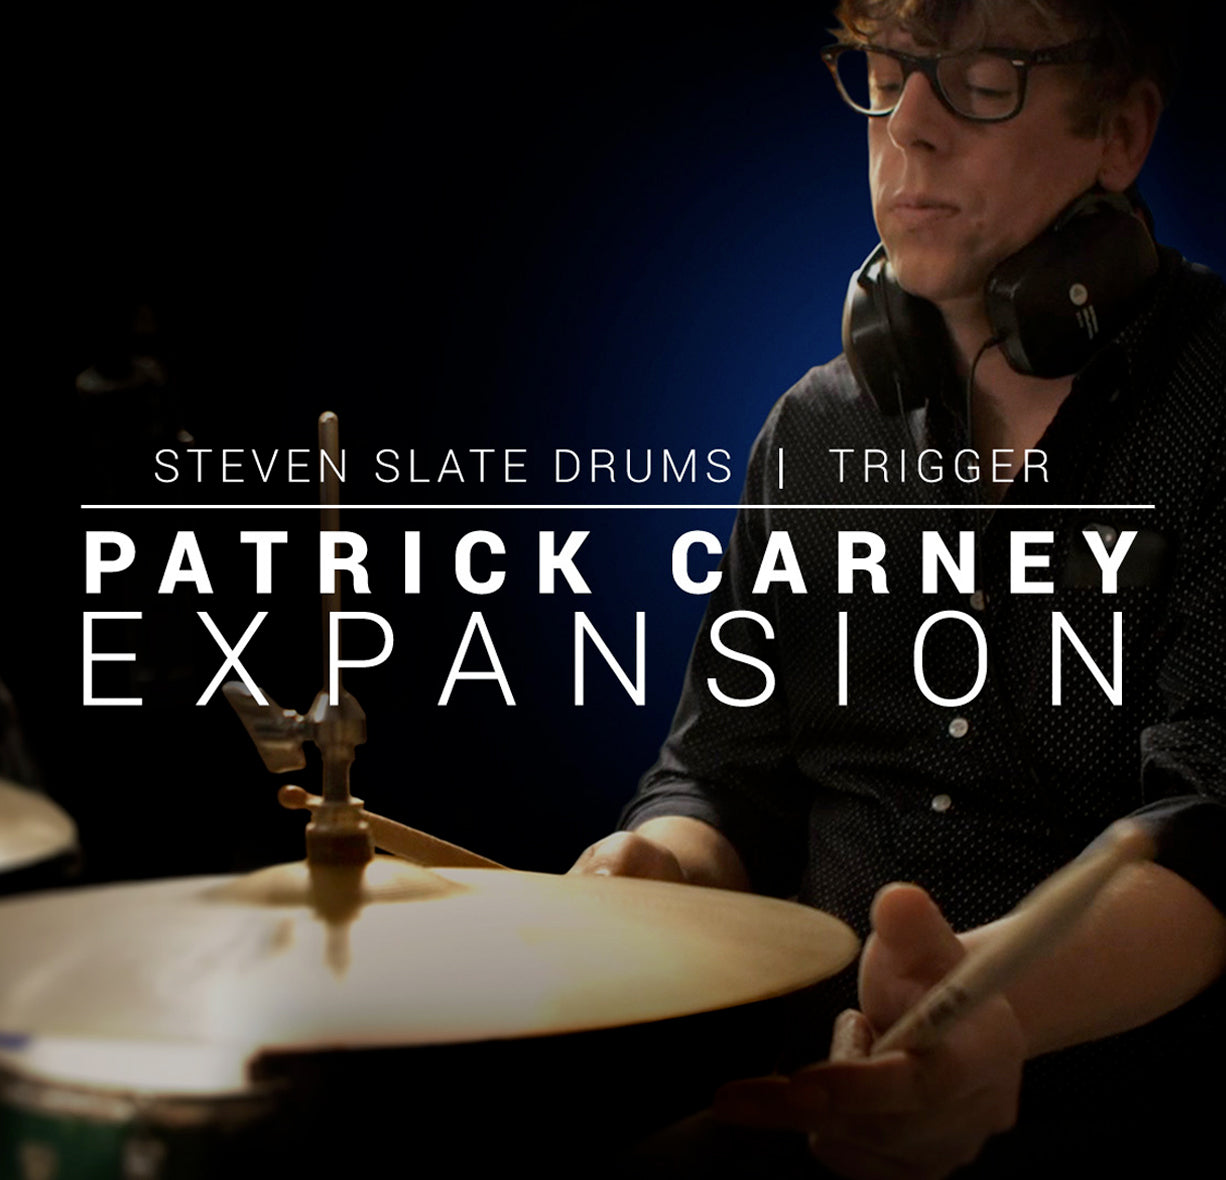 Steven Slate Drums Patrick Carney Expansion for Trigger & SSD